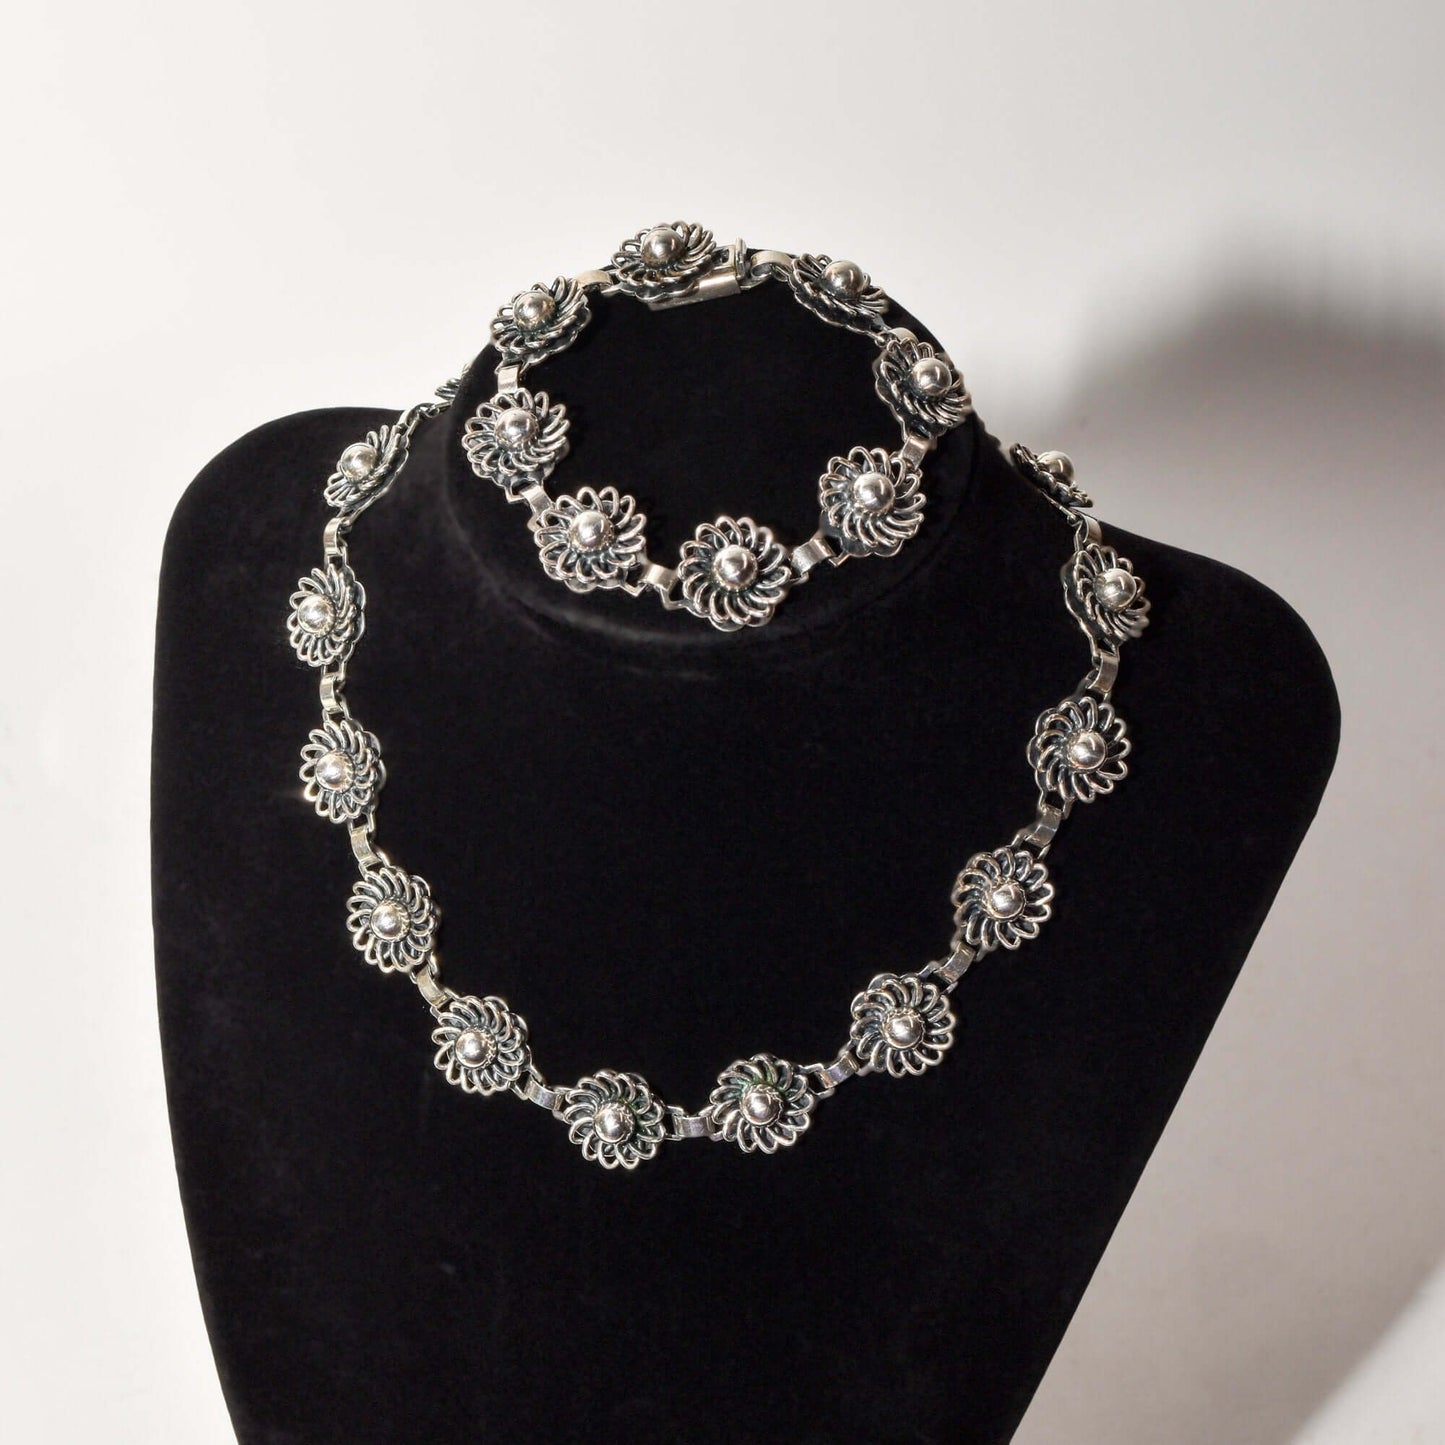 1950's Danish Sterling Silver Flower Link Necklace & Bracelet Set By John Lauritzen